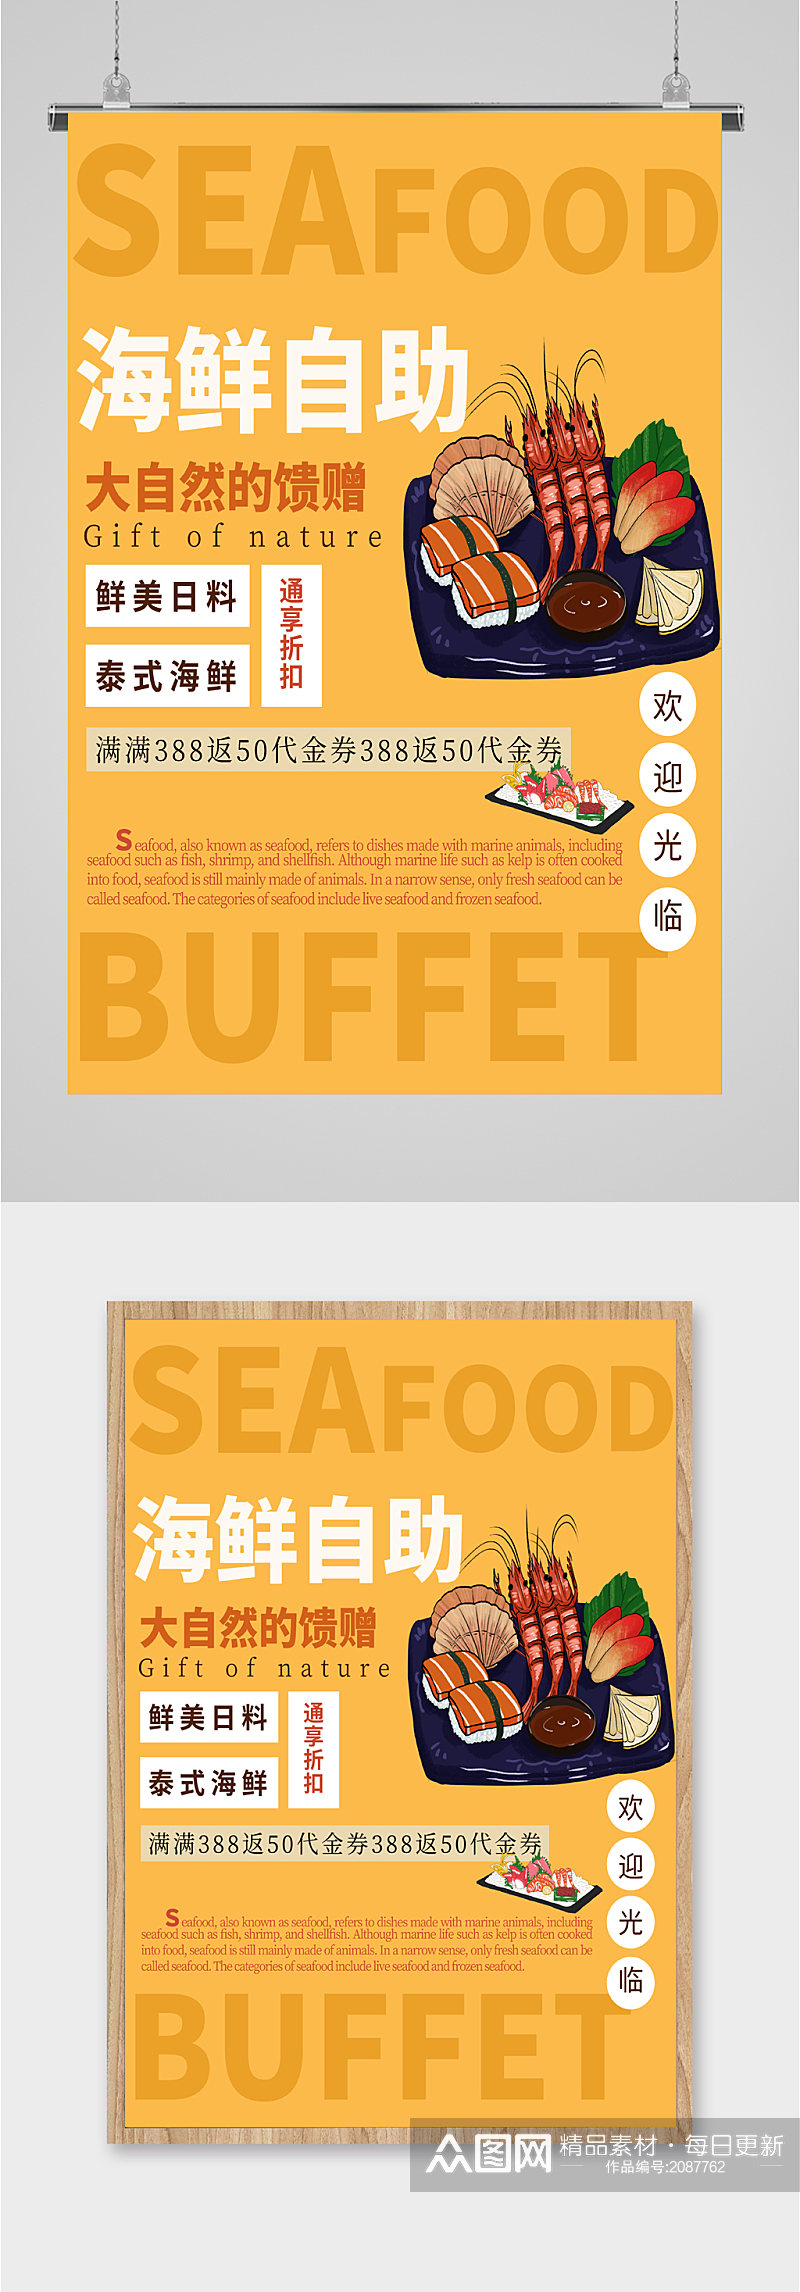 海鲜自助美食海报素材